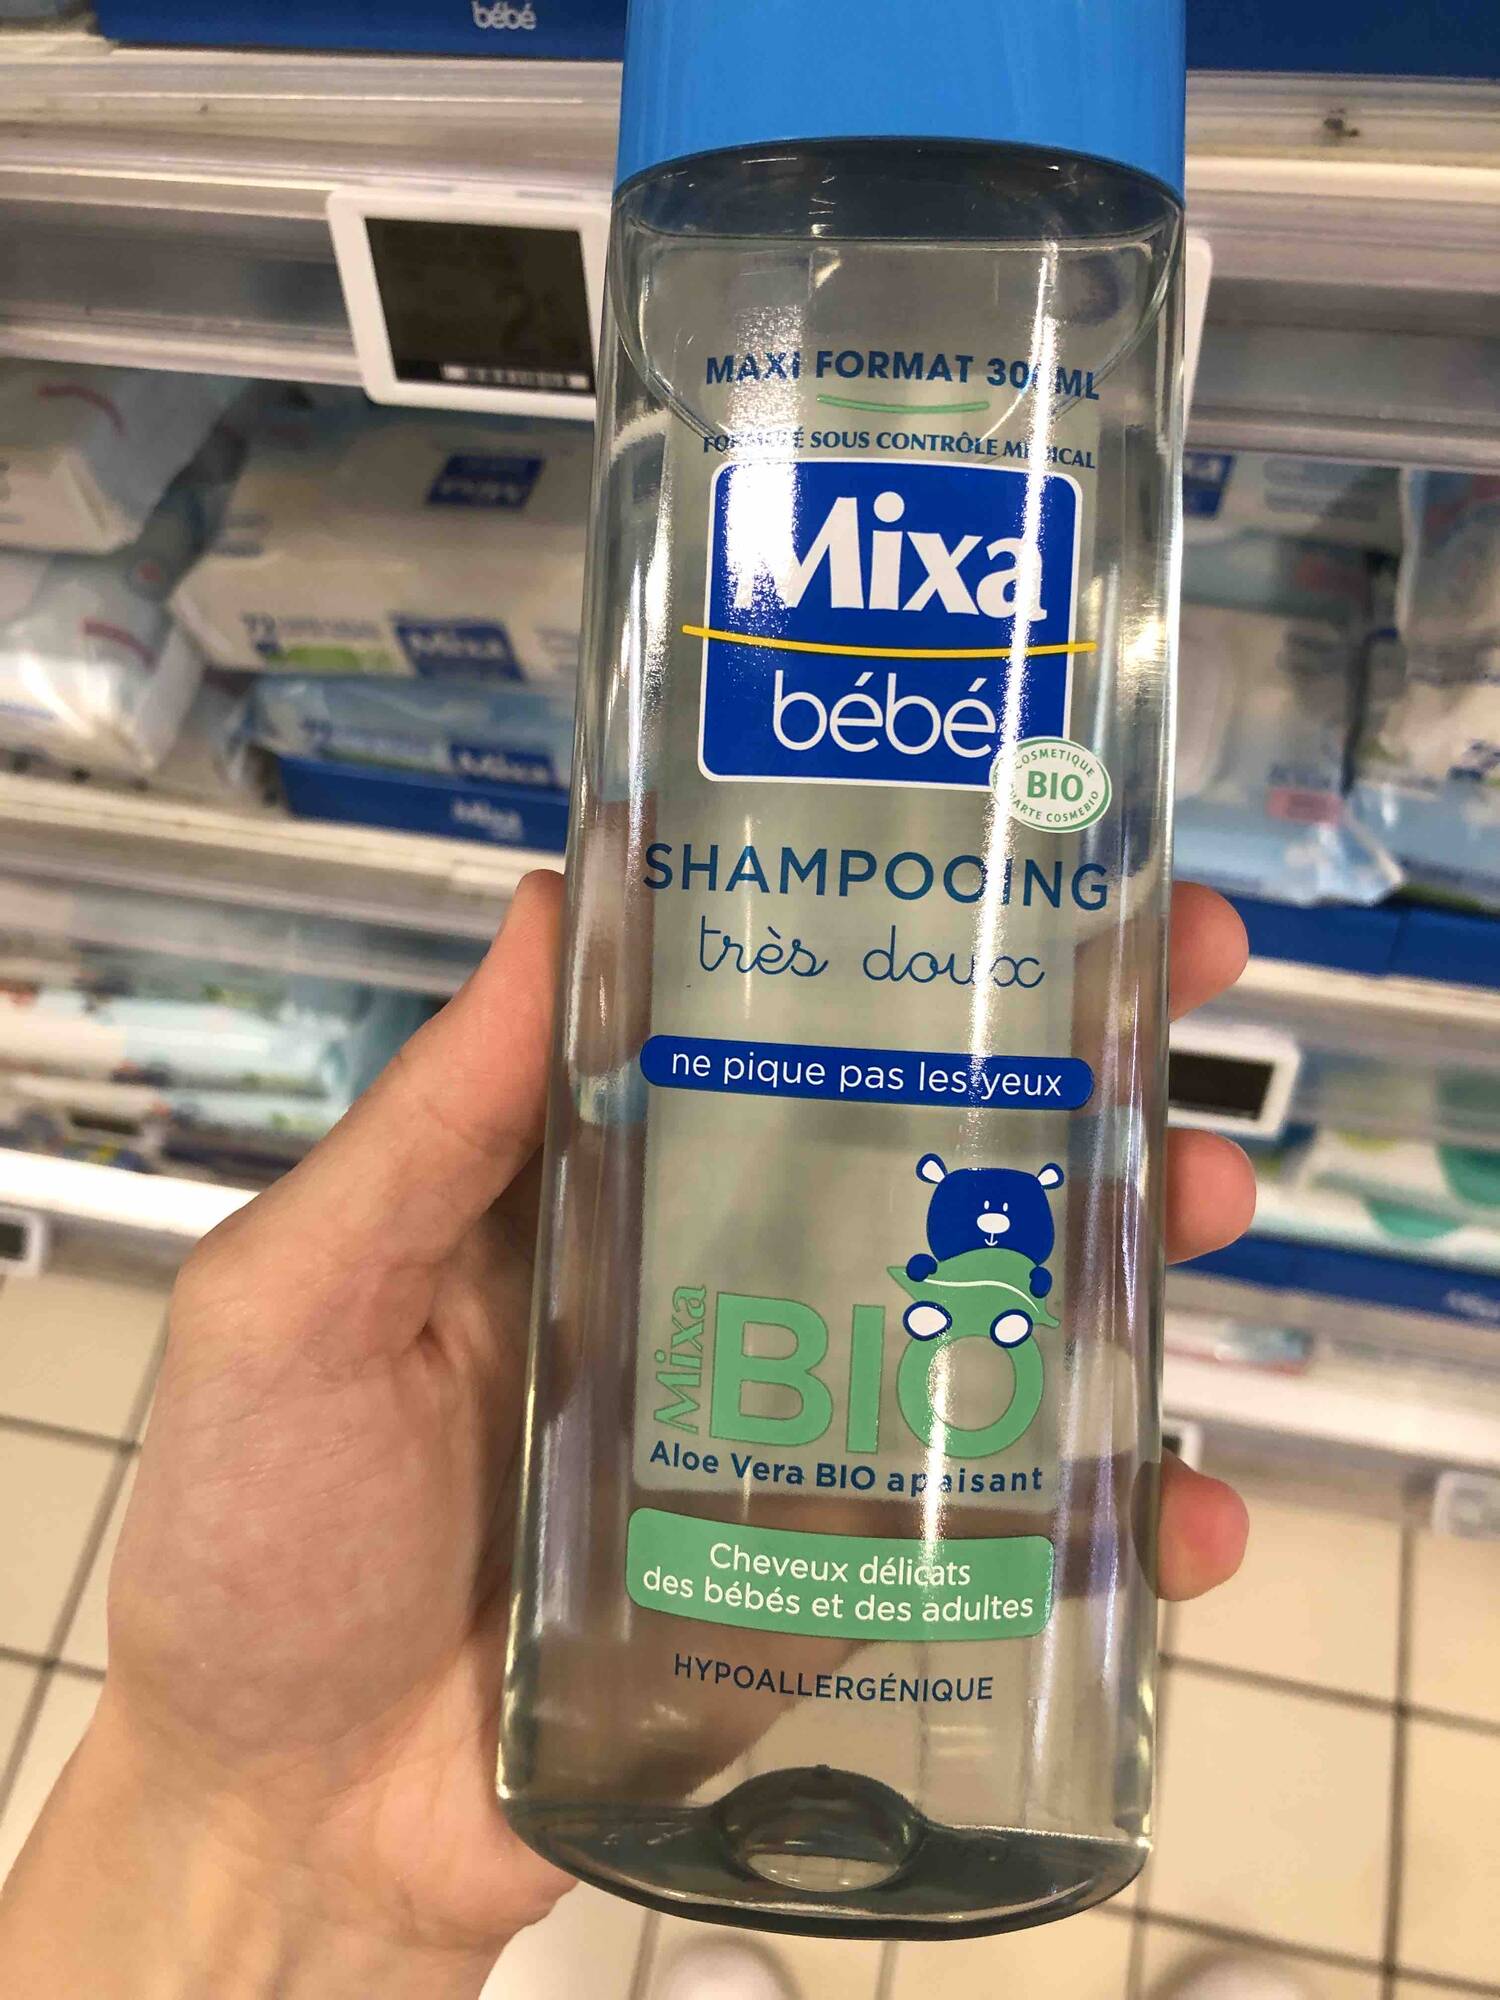 Shampooing Très Doux - Mixa Bébé - Mixa